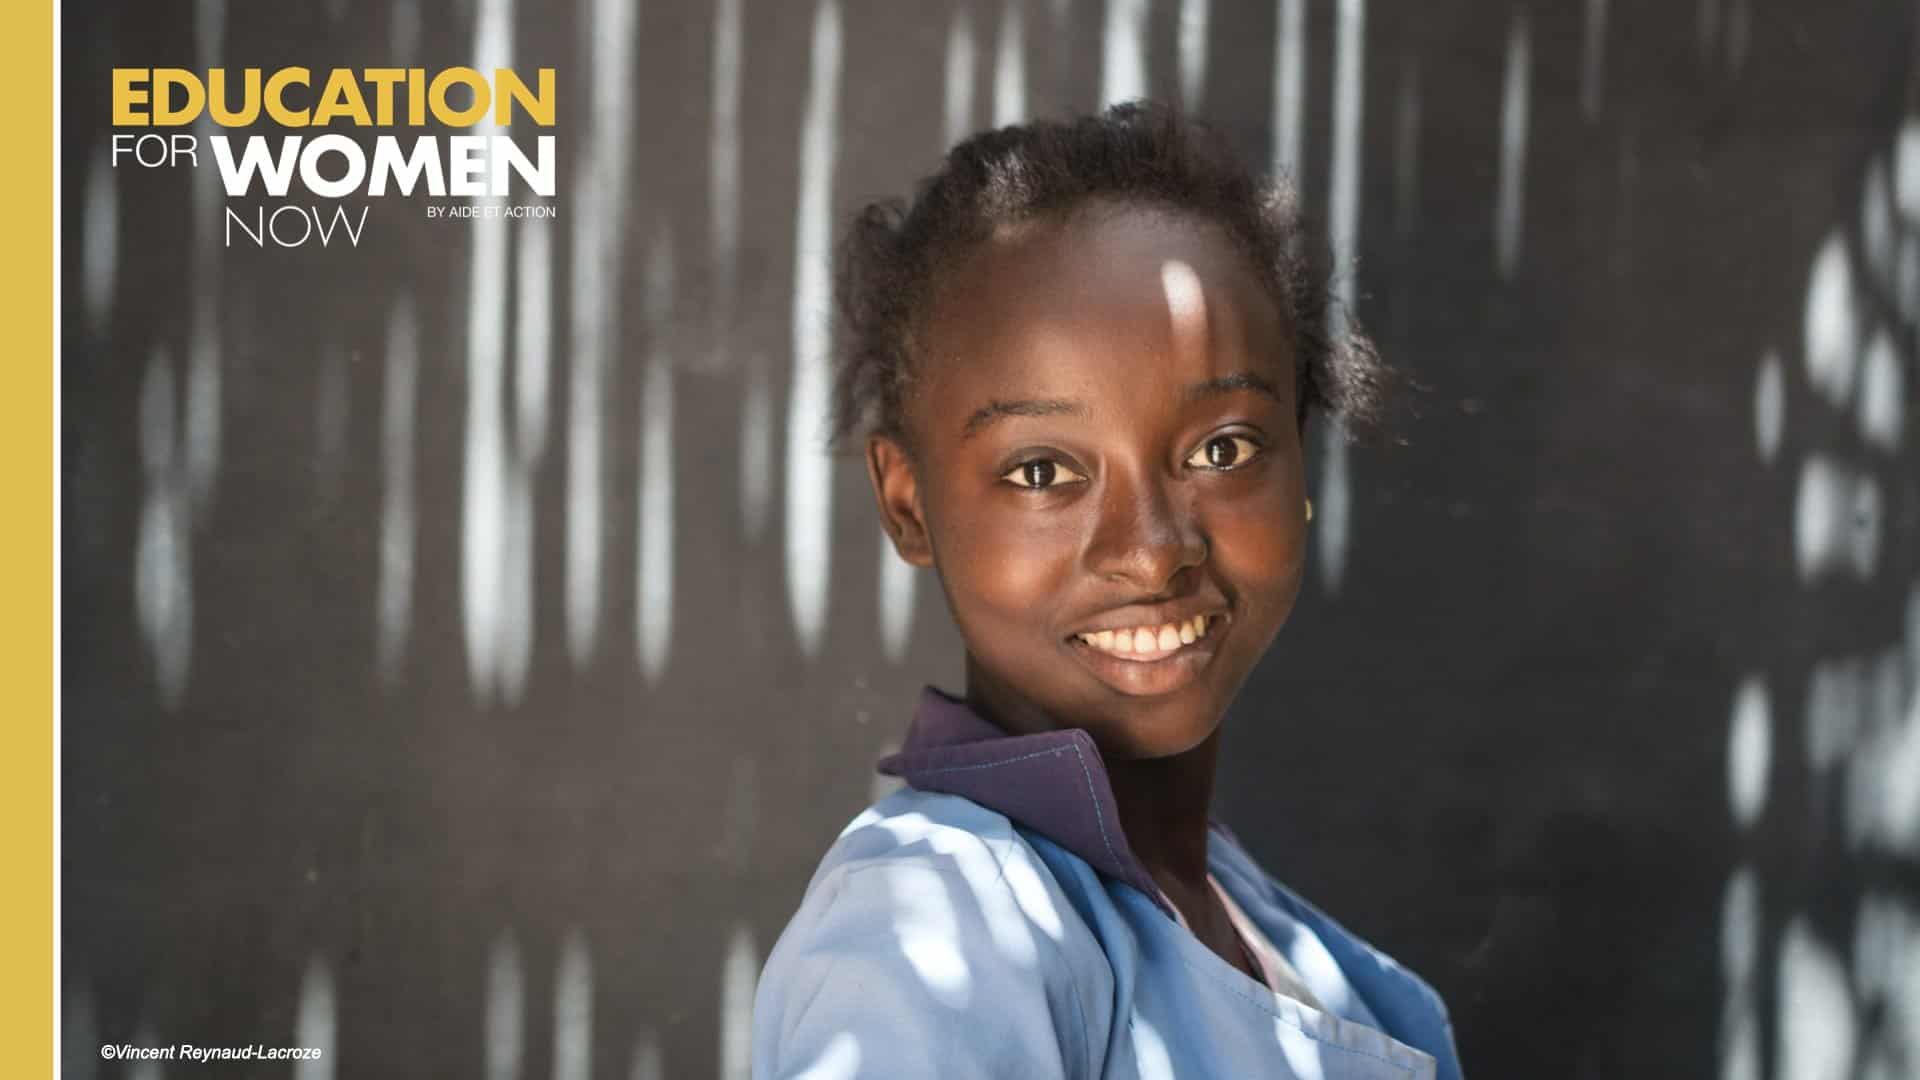 Communiqué de presse – Lancement de la campagne philanthropique mondiale d’Aide et Action : « Education for Women Now »